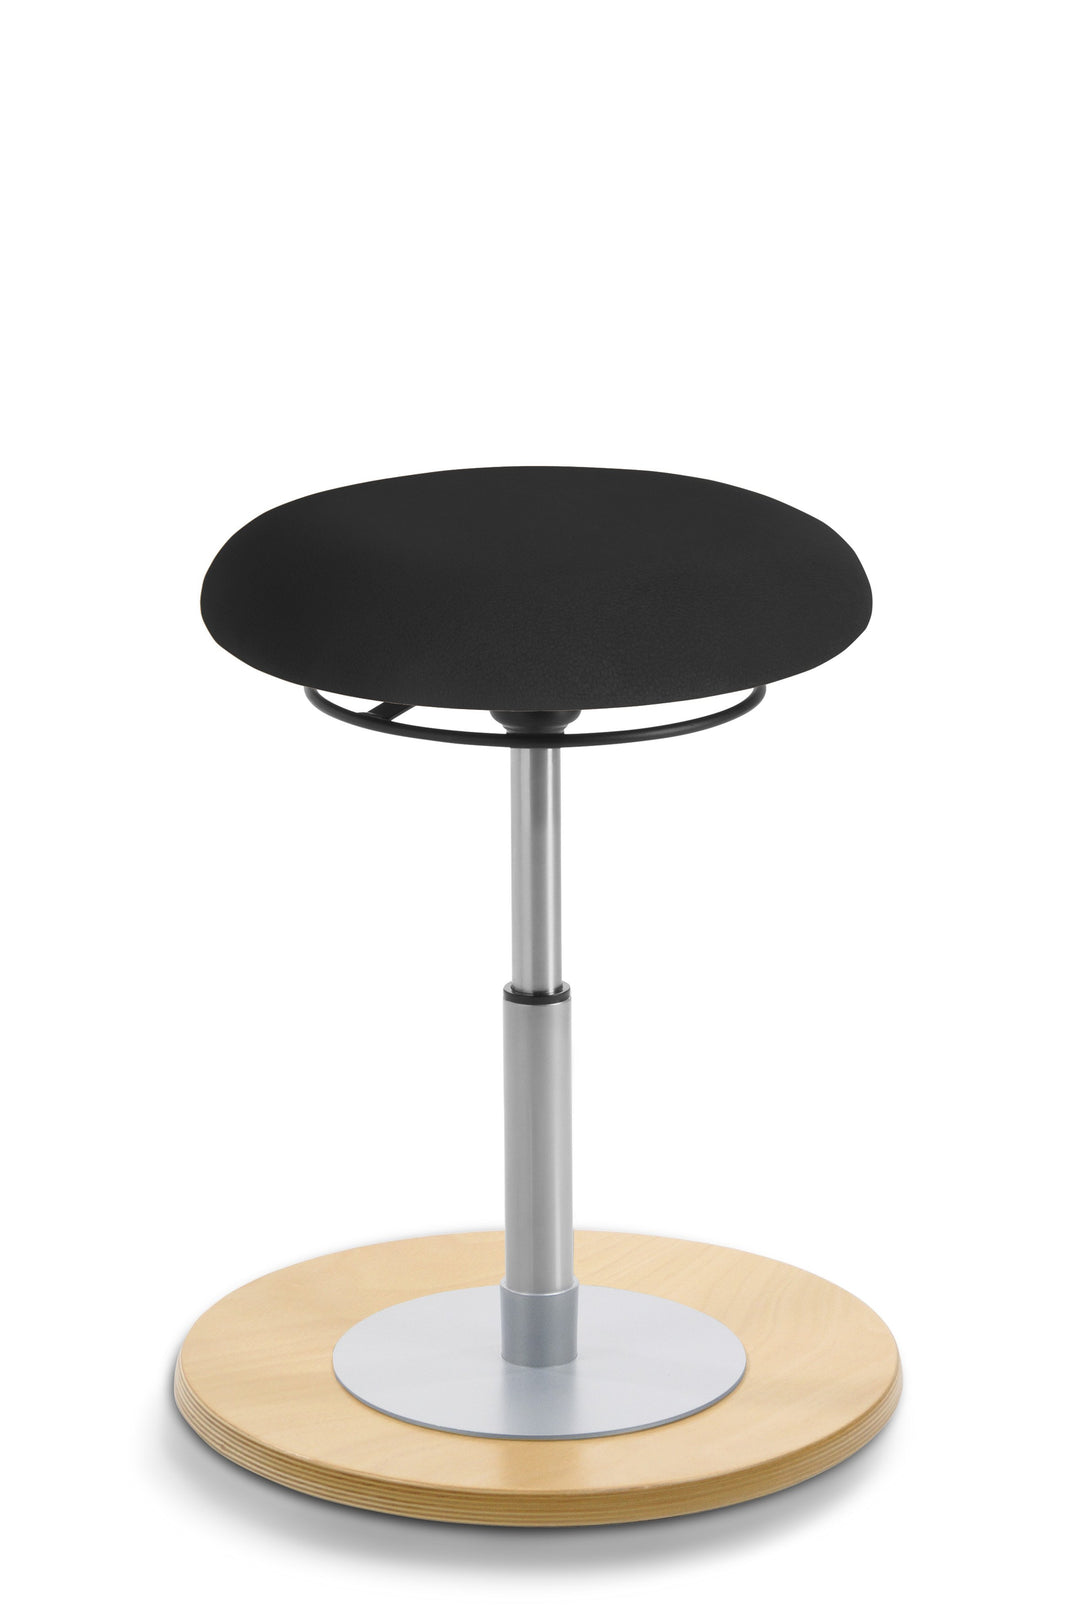 Mayer MyErgosit Taboret Krzesło Stołek balansujący okrągły 39-52cm podstawa sklejka naturalna 1151 N